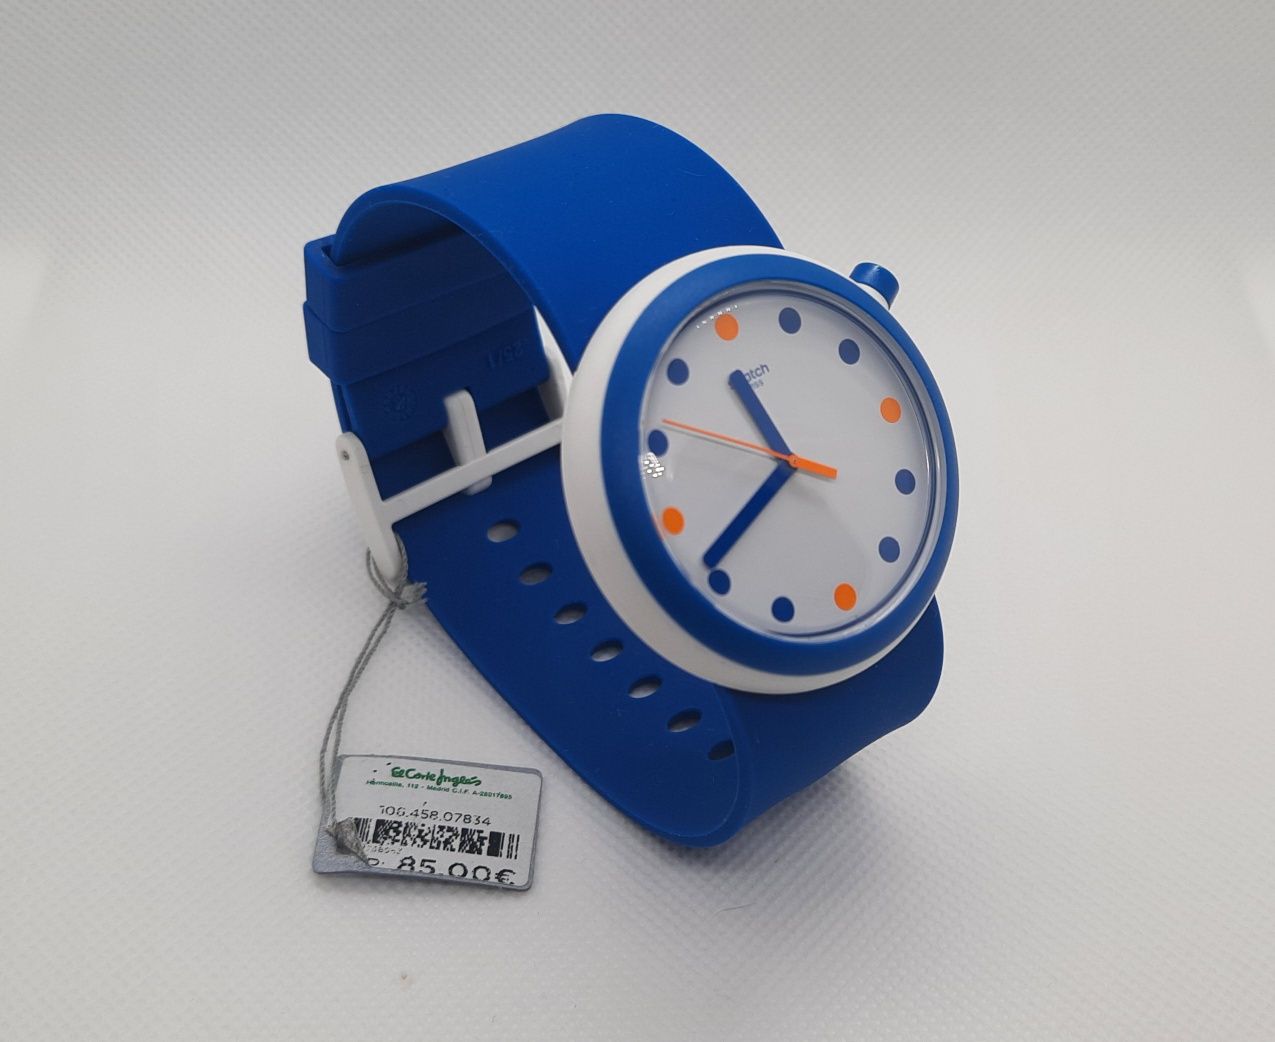 Swatch popiness Oригінальний швейцарський годинник